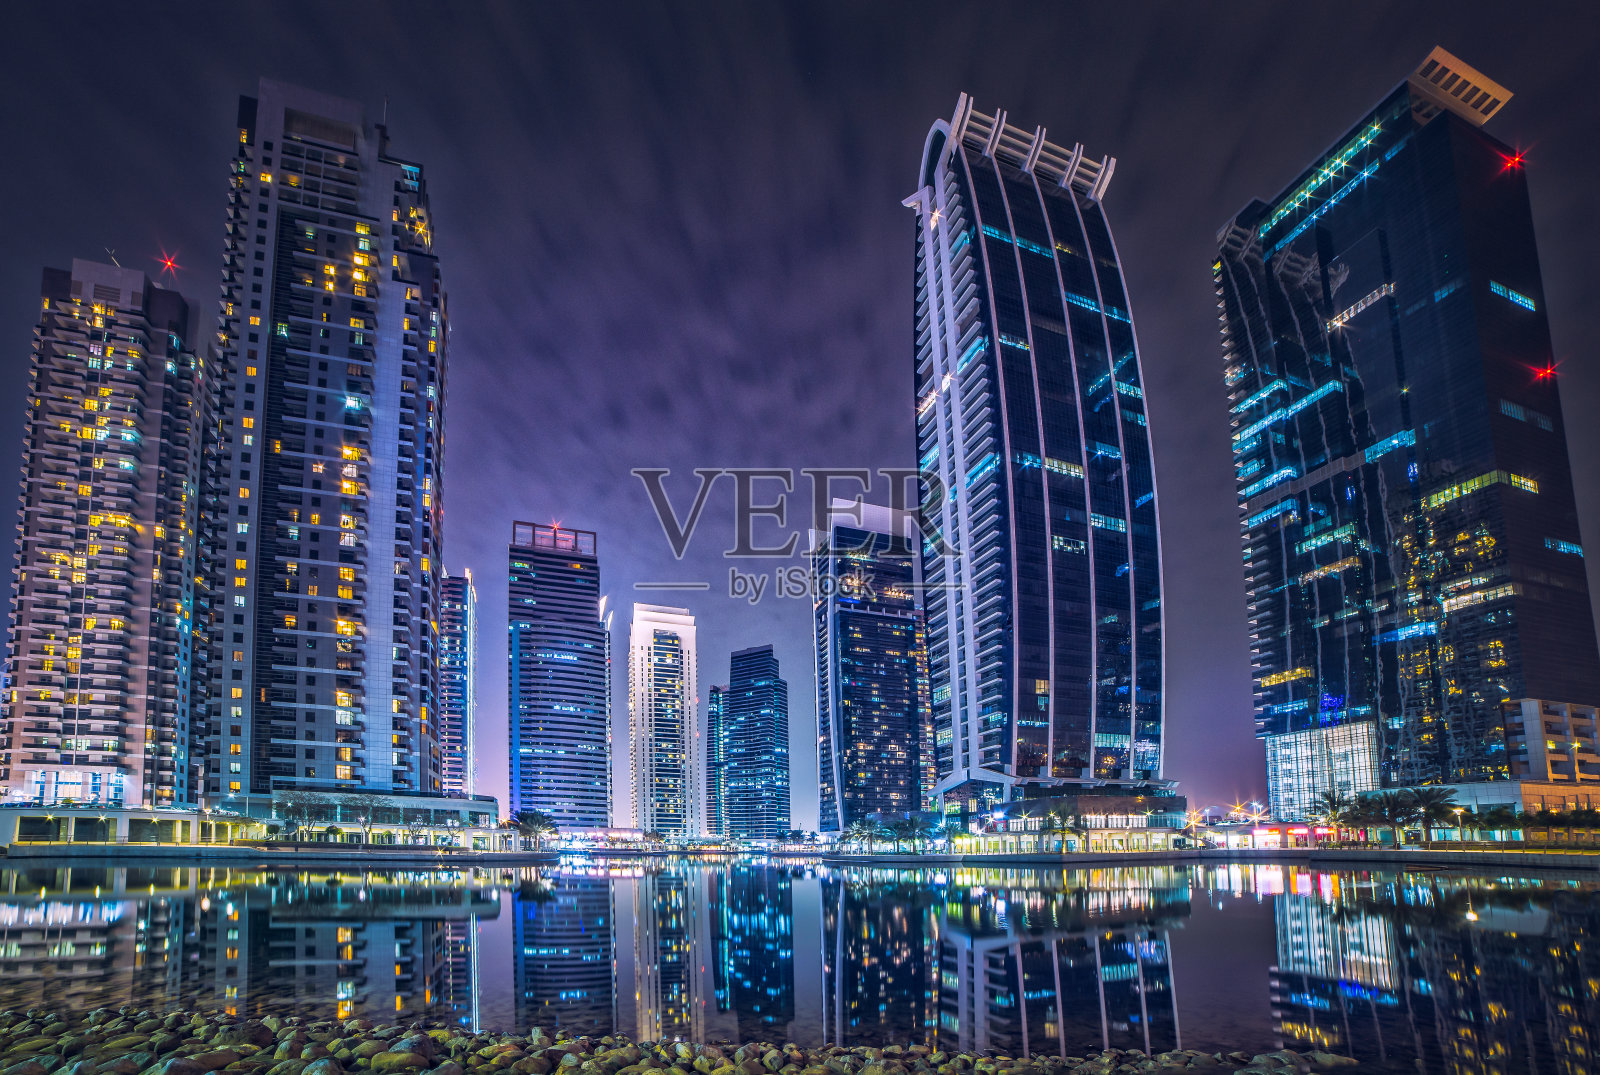 迪拜码头JLT酒店背景照片摄影图片